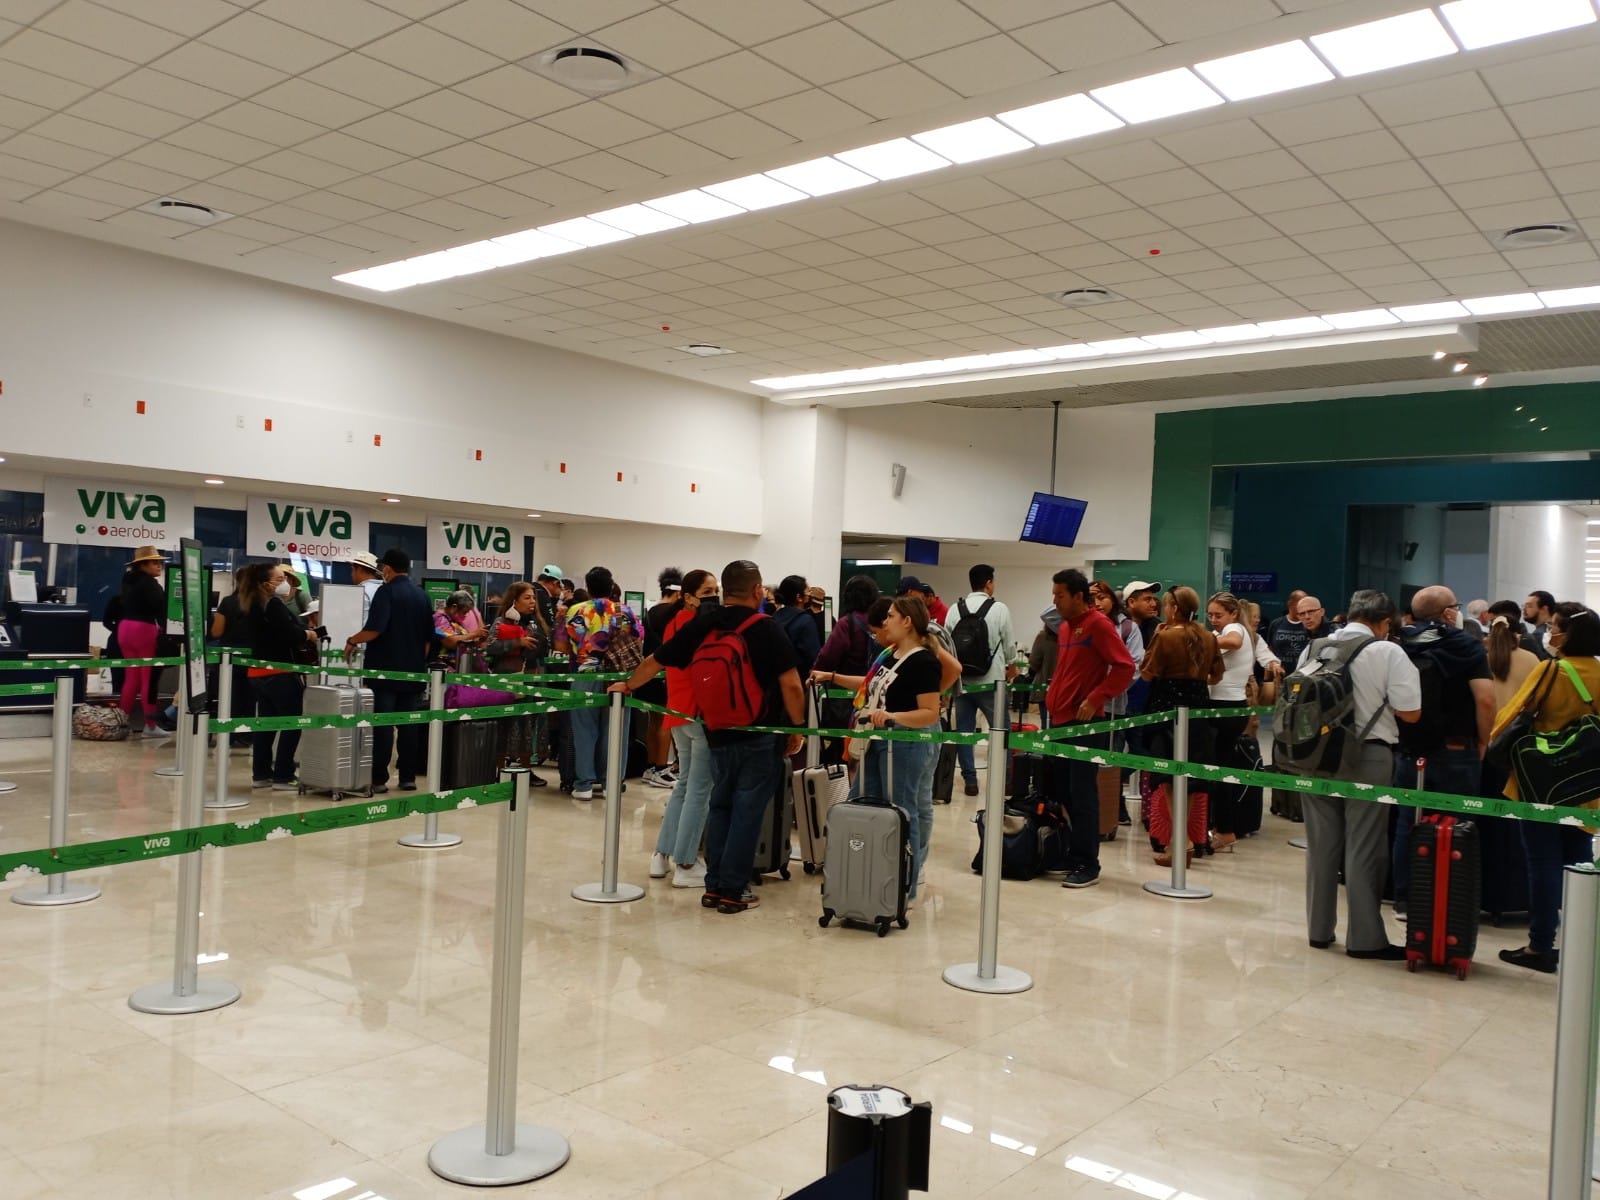 Los cuatro vuelos llegaron minutos tarde al aeropuerto de Mérida